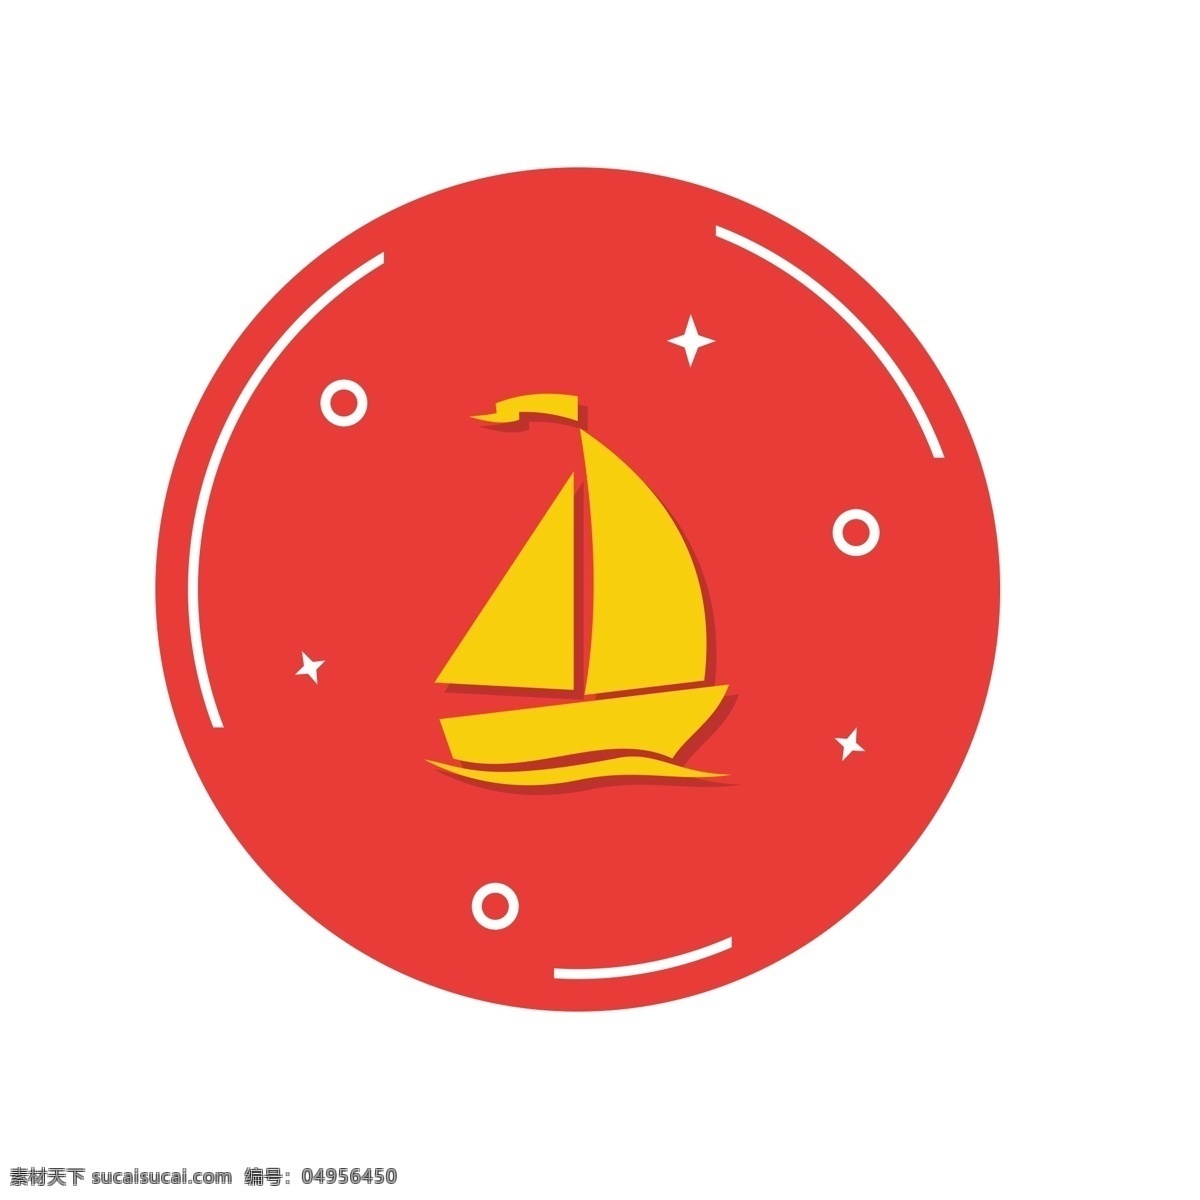 帆船图标 帆船 扁平化ui ui图标 手机图标 界面ui 网页ui h5图标